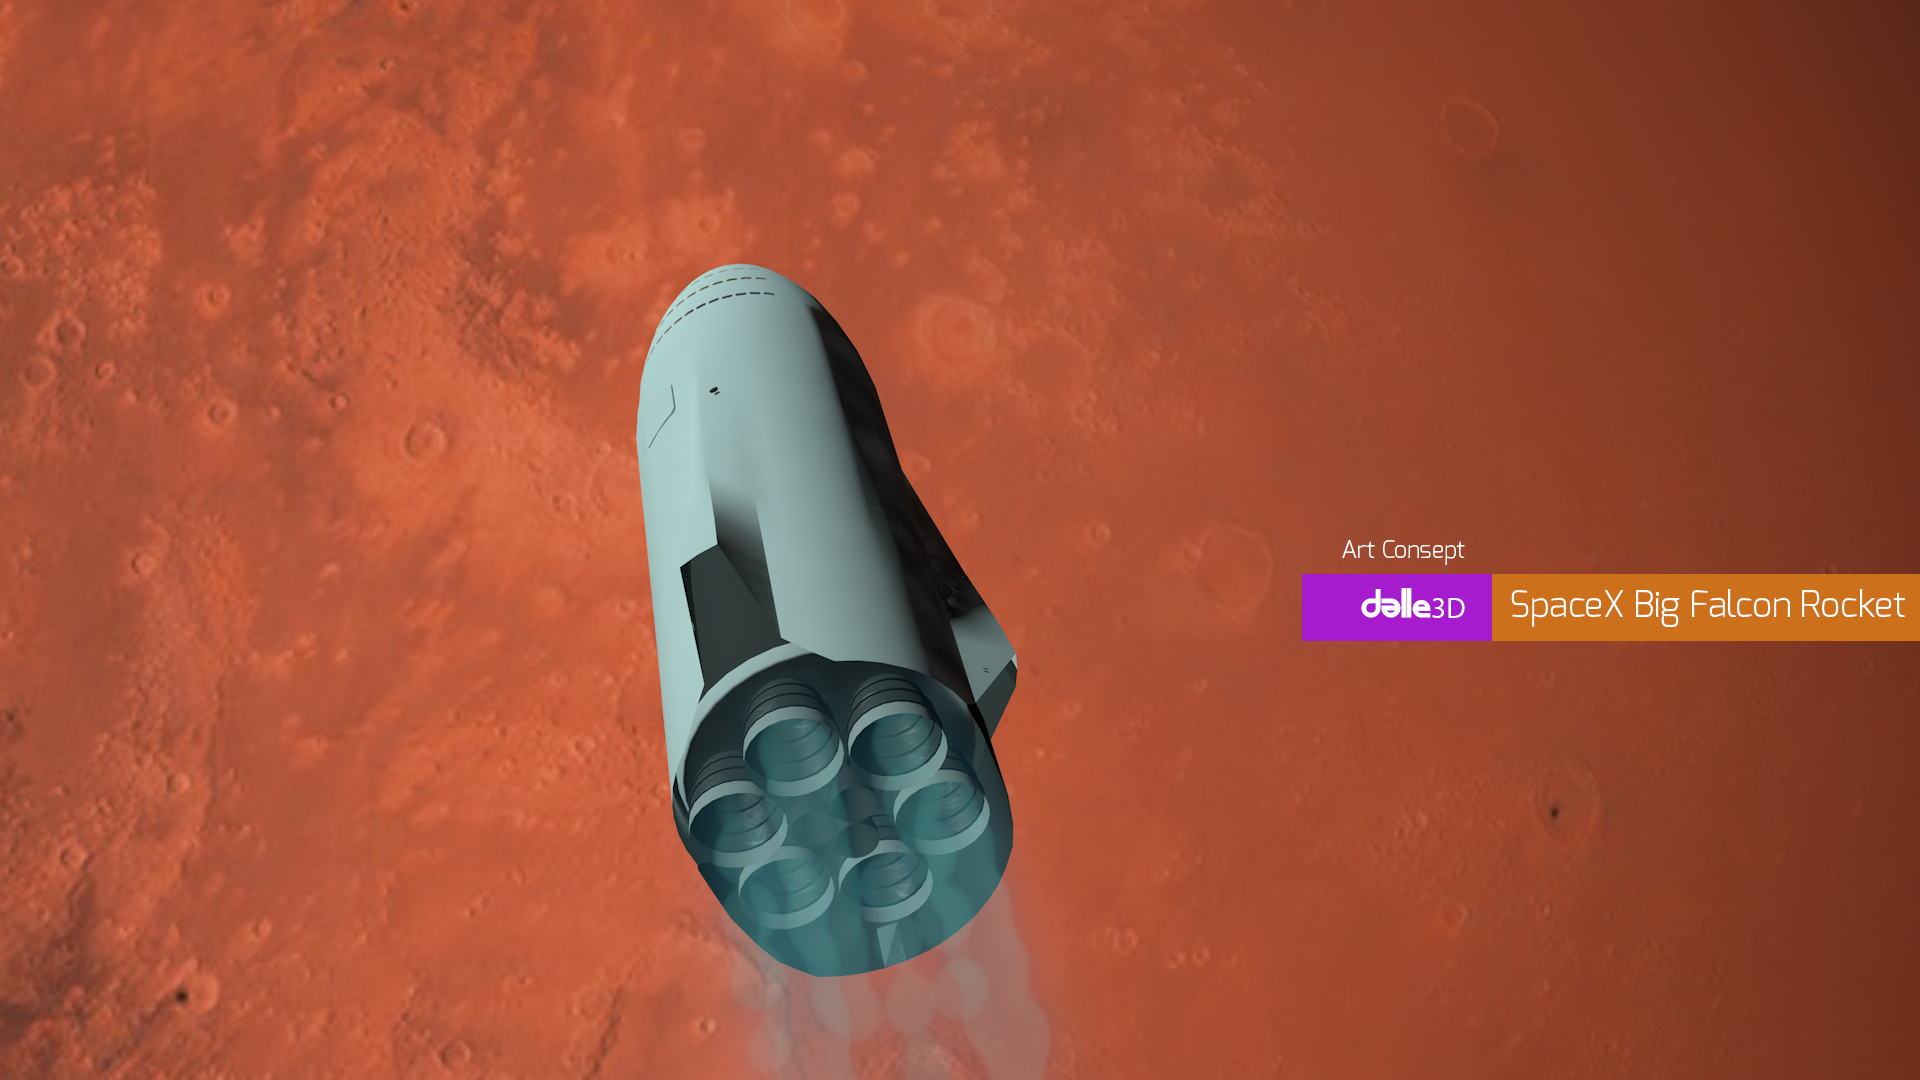 imagen de SpaceX Big Falcon Rocket en Cinema 4d maxwell render